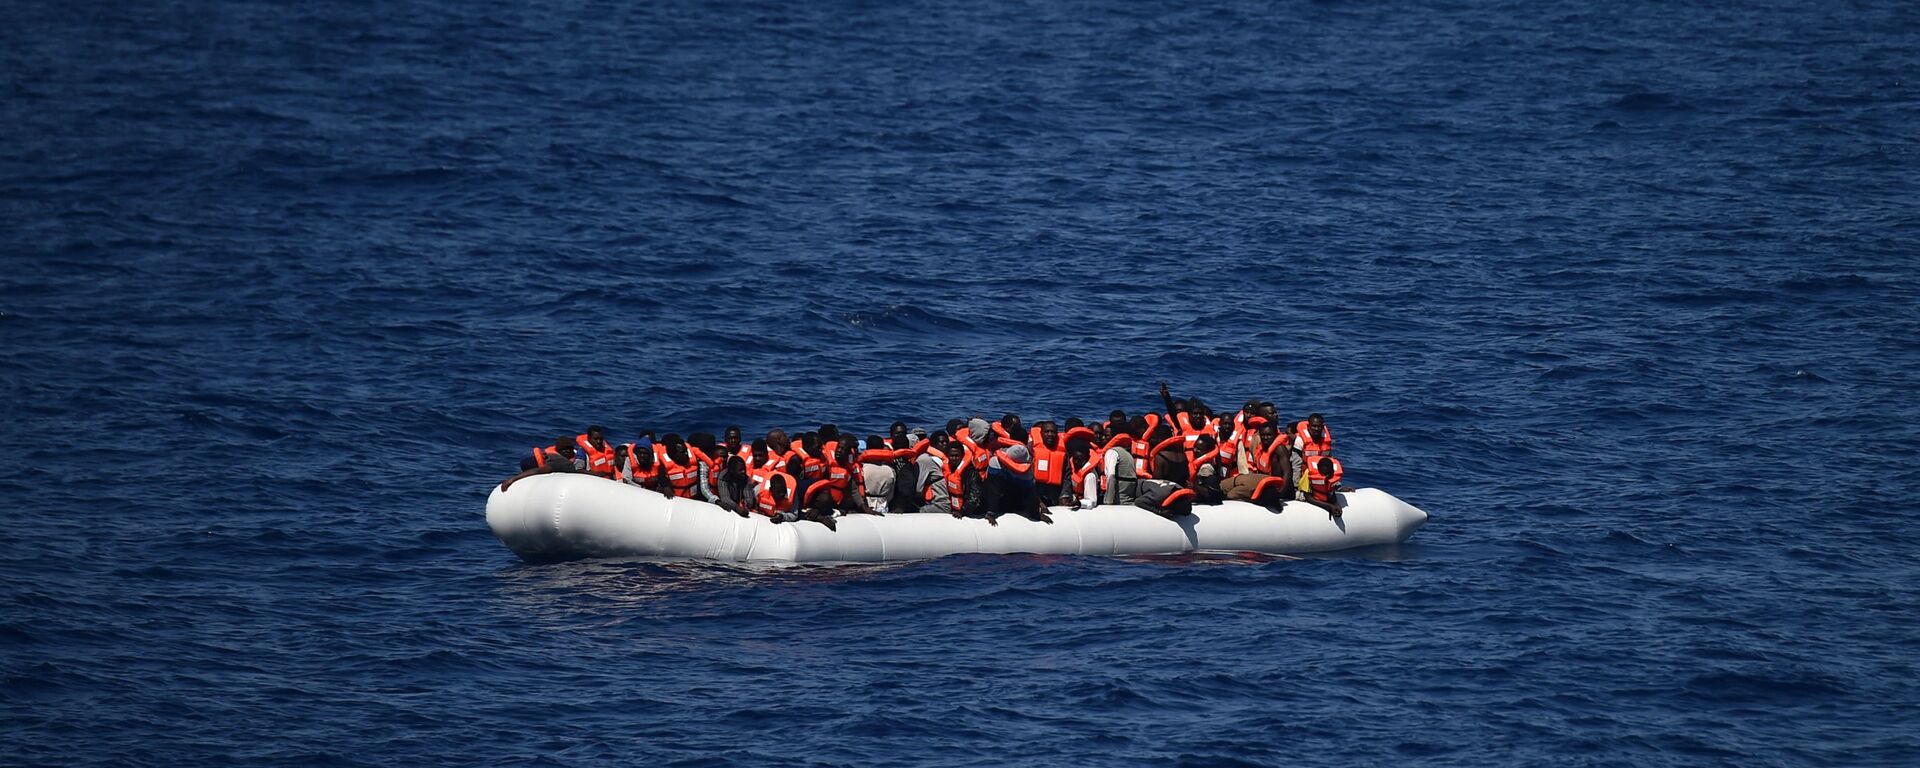 Des réfugiés attendent d'être secourus par le bateau Aquarius en mer Méditerranée au large des côtes libyennes, mai 2016 - Sputnik Afrique, 1920, 29.07.2021